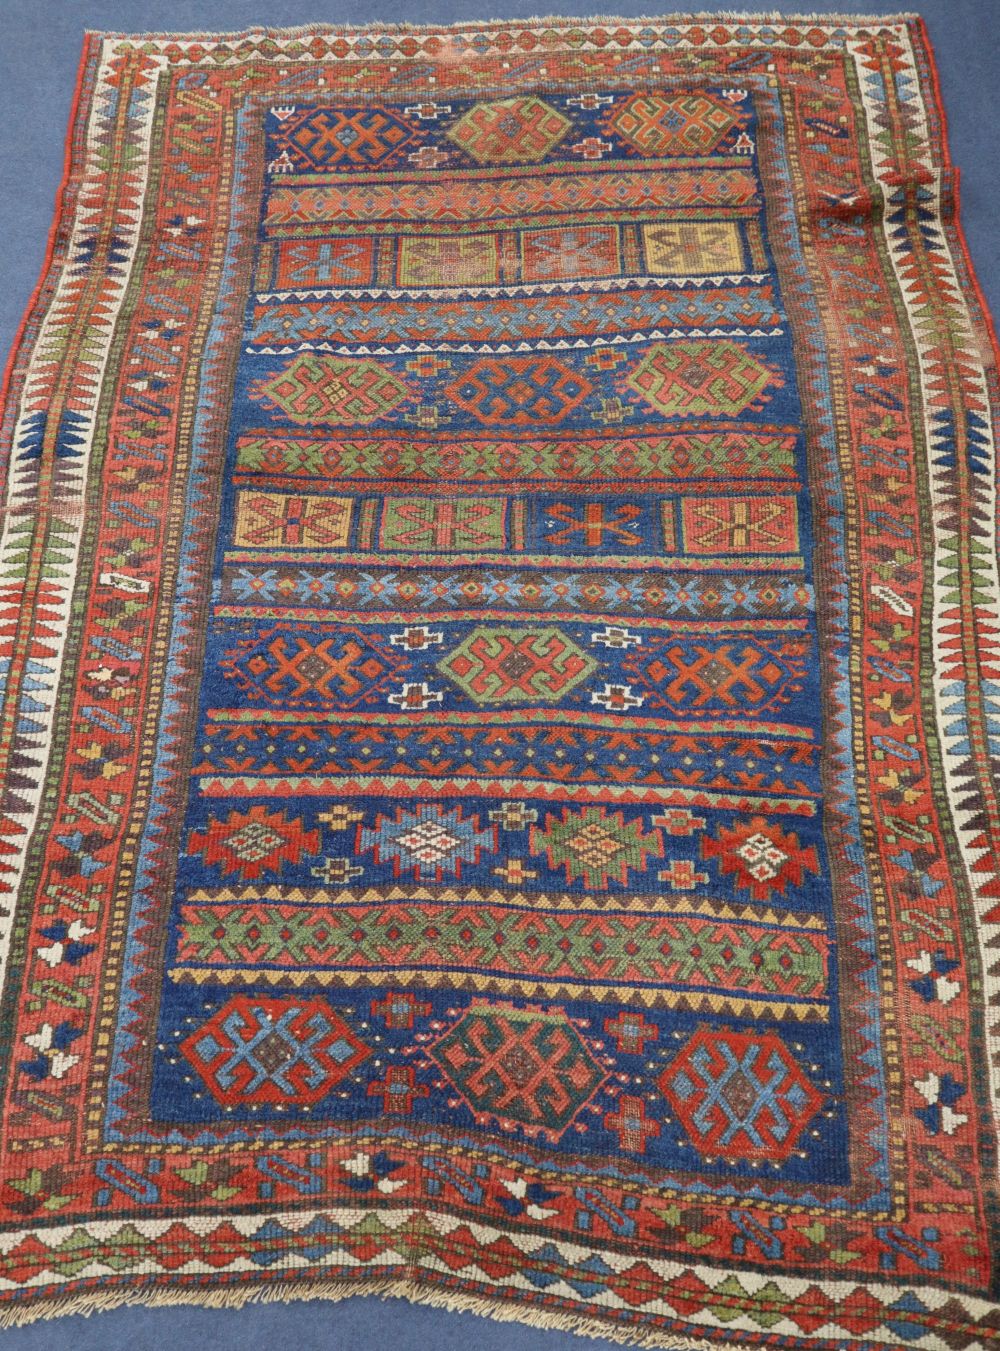 A red Kurdish rug, 206 x 140cm